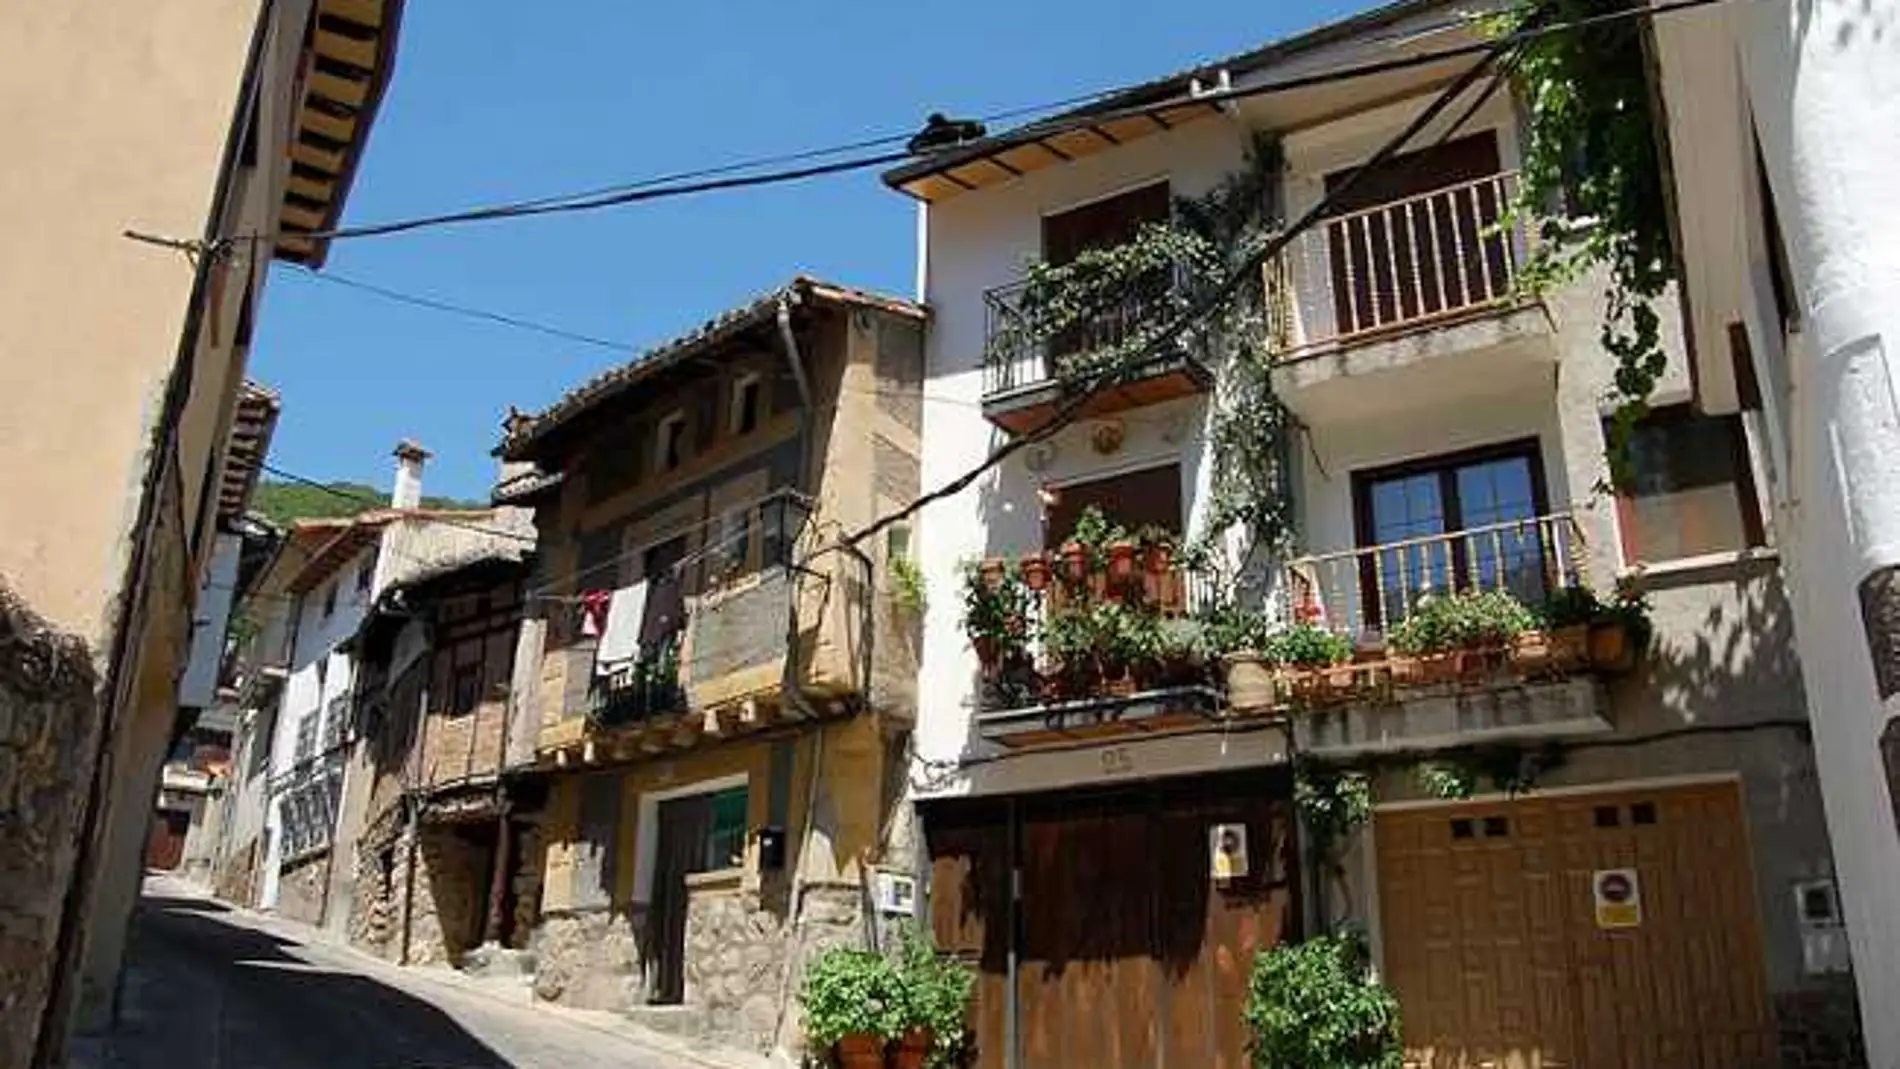 Calles y casas típicas de Guisando